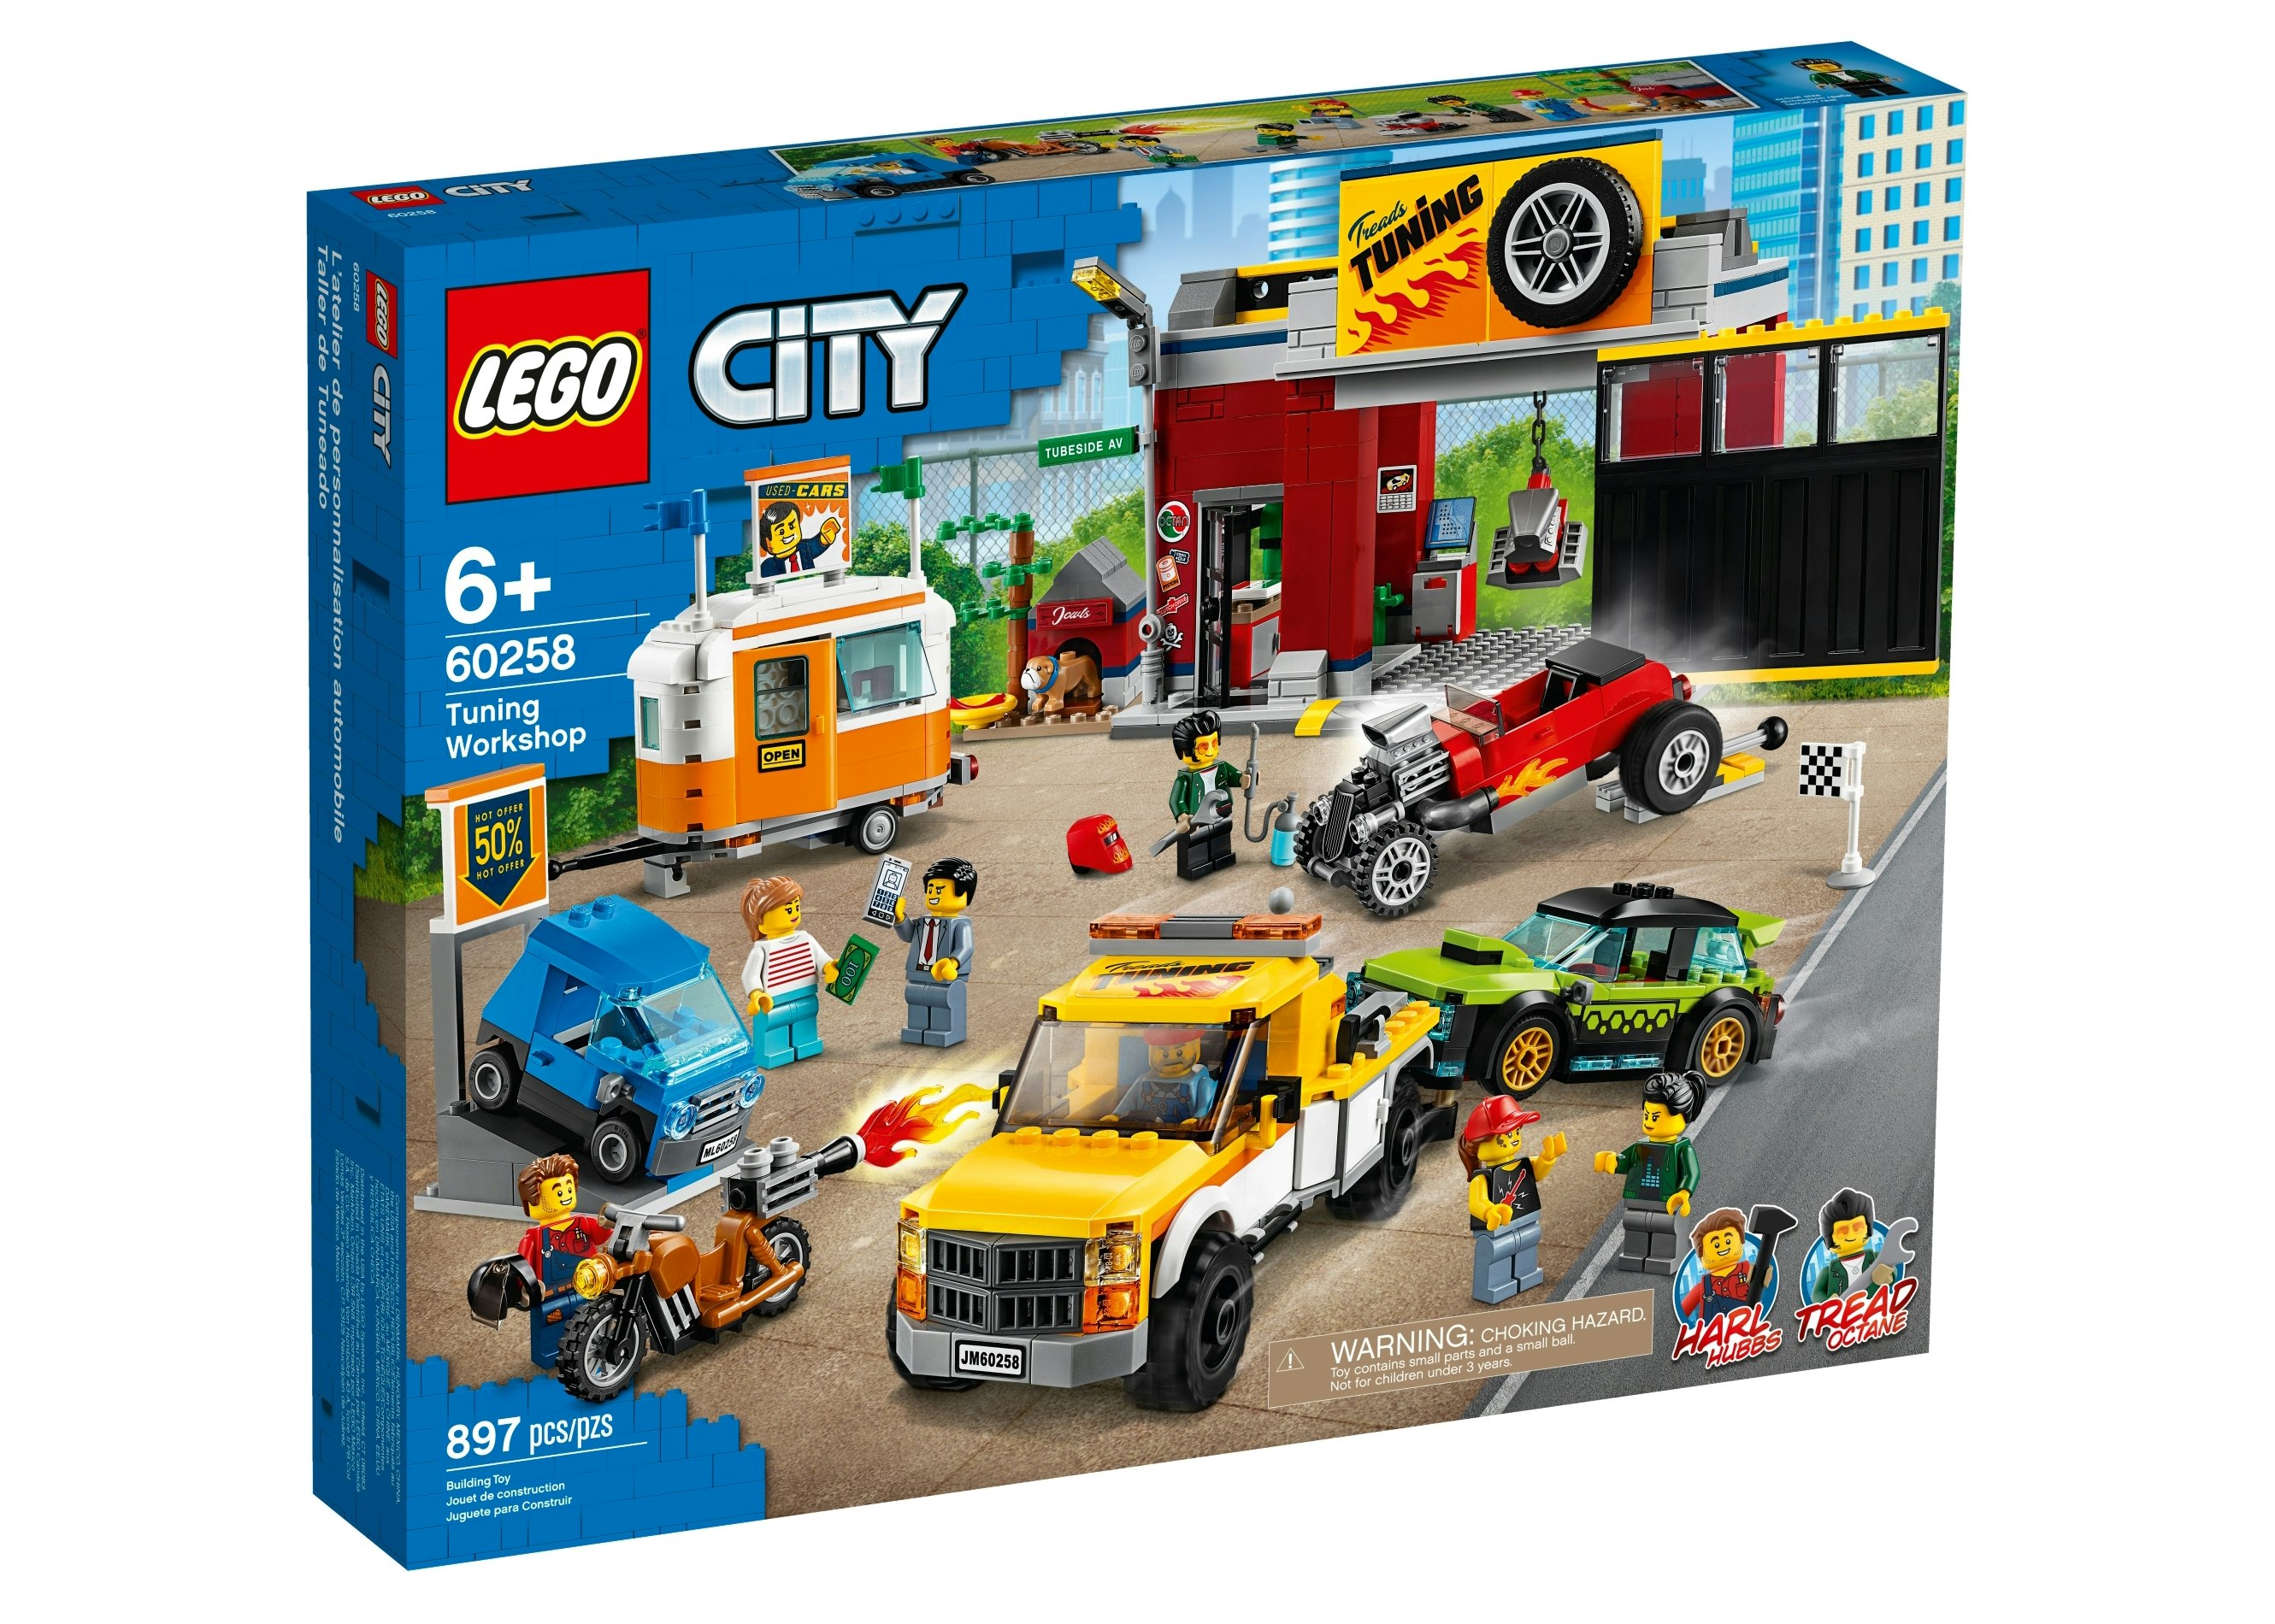 New Sealed 60258 Lego City Tuning Workshop